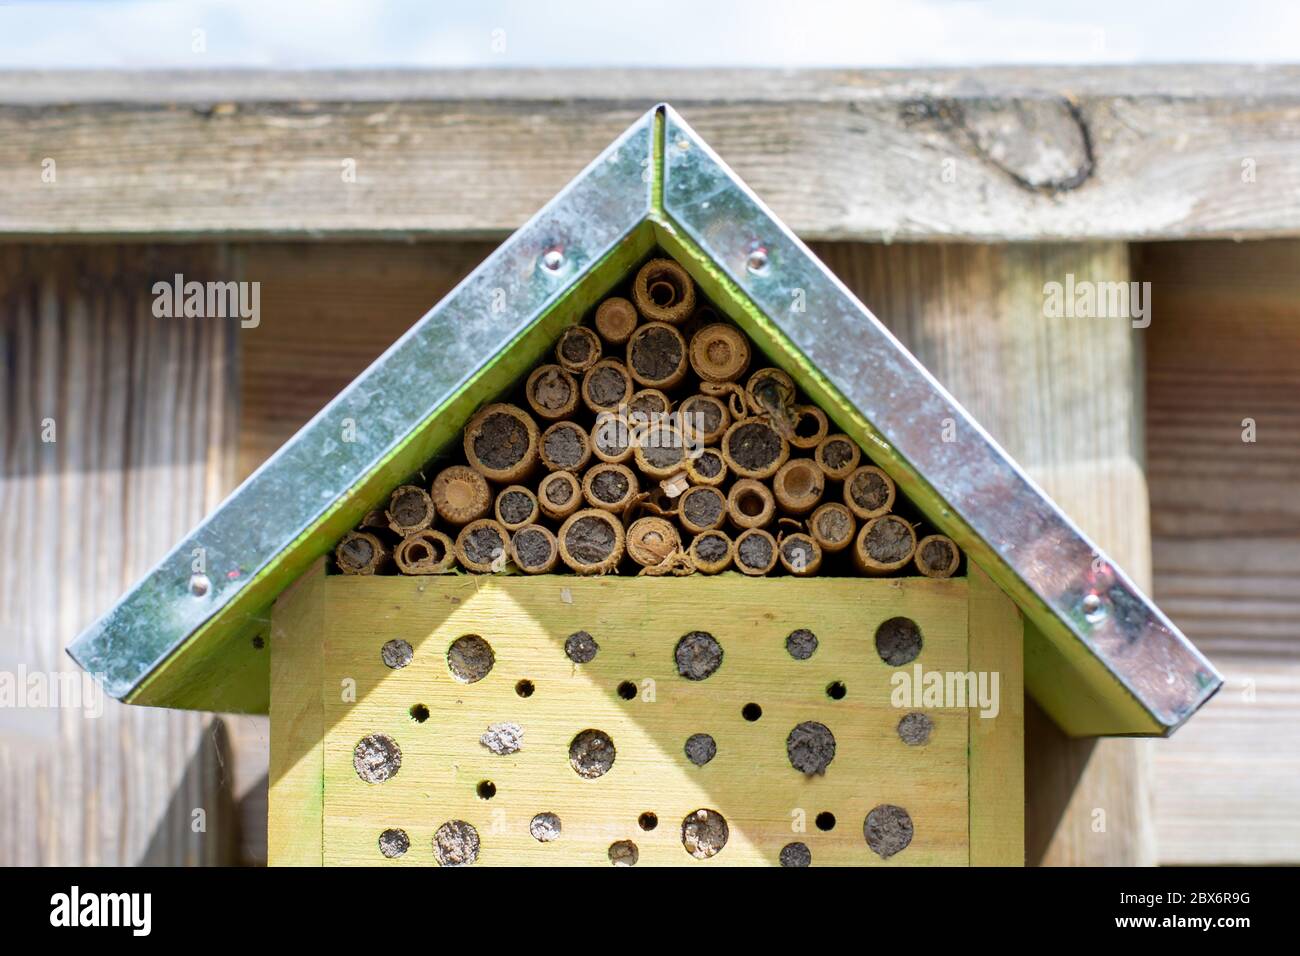 Un piccolo hotel di insetti ecologici bug house con un'ape selvatica sulla destra. Hotel che offre la natura e la protezione dagli insetti. Api selvatiche e insetti altri fanno un nido dentro Foto Stock